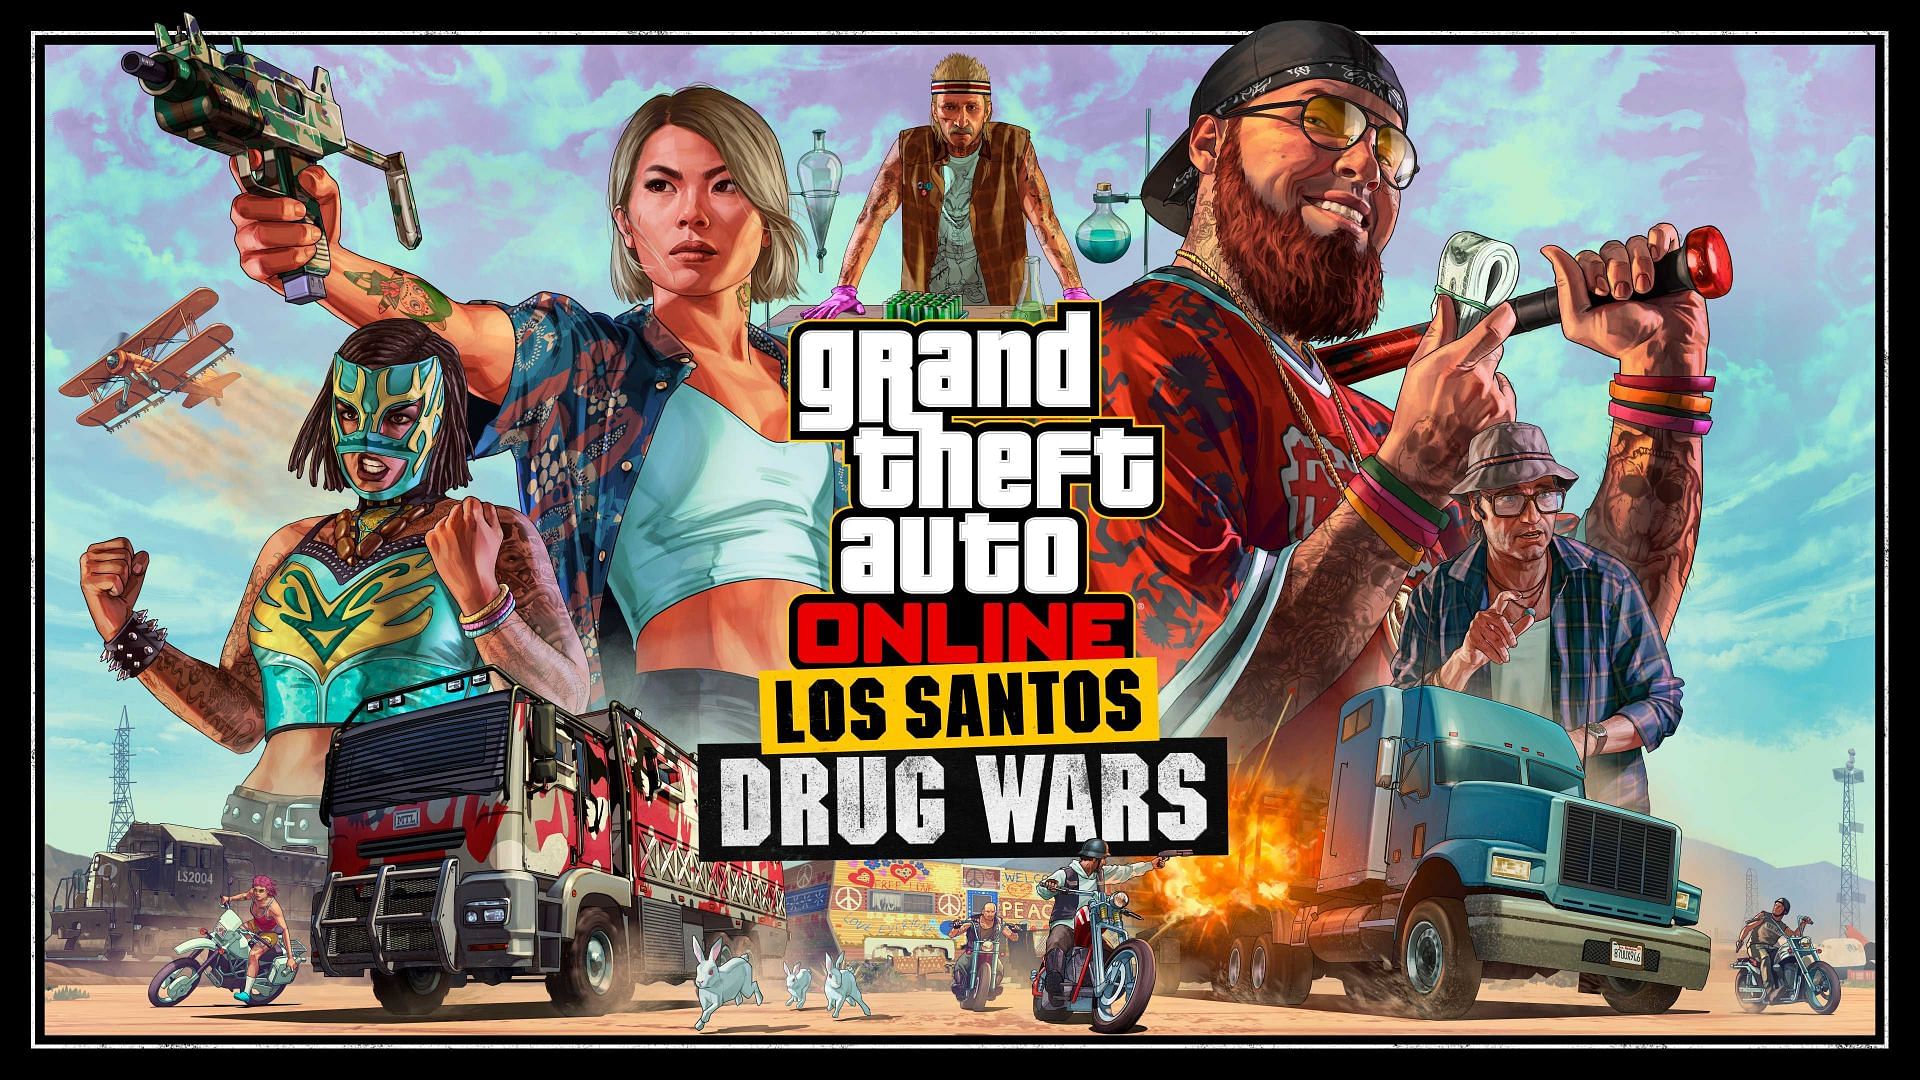 Official artwork for the Los Santos Drug Wars update (Image via Rockstar Games)